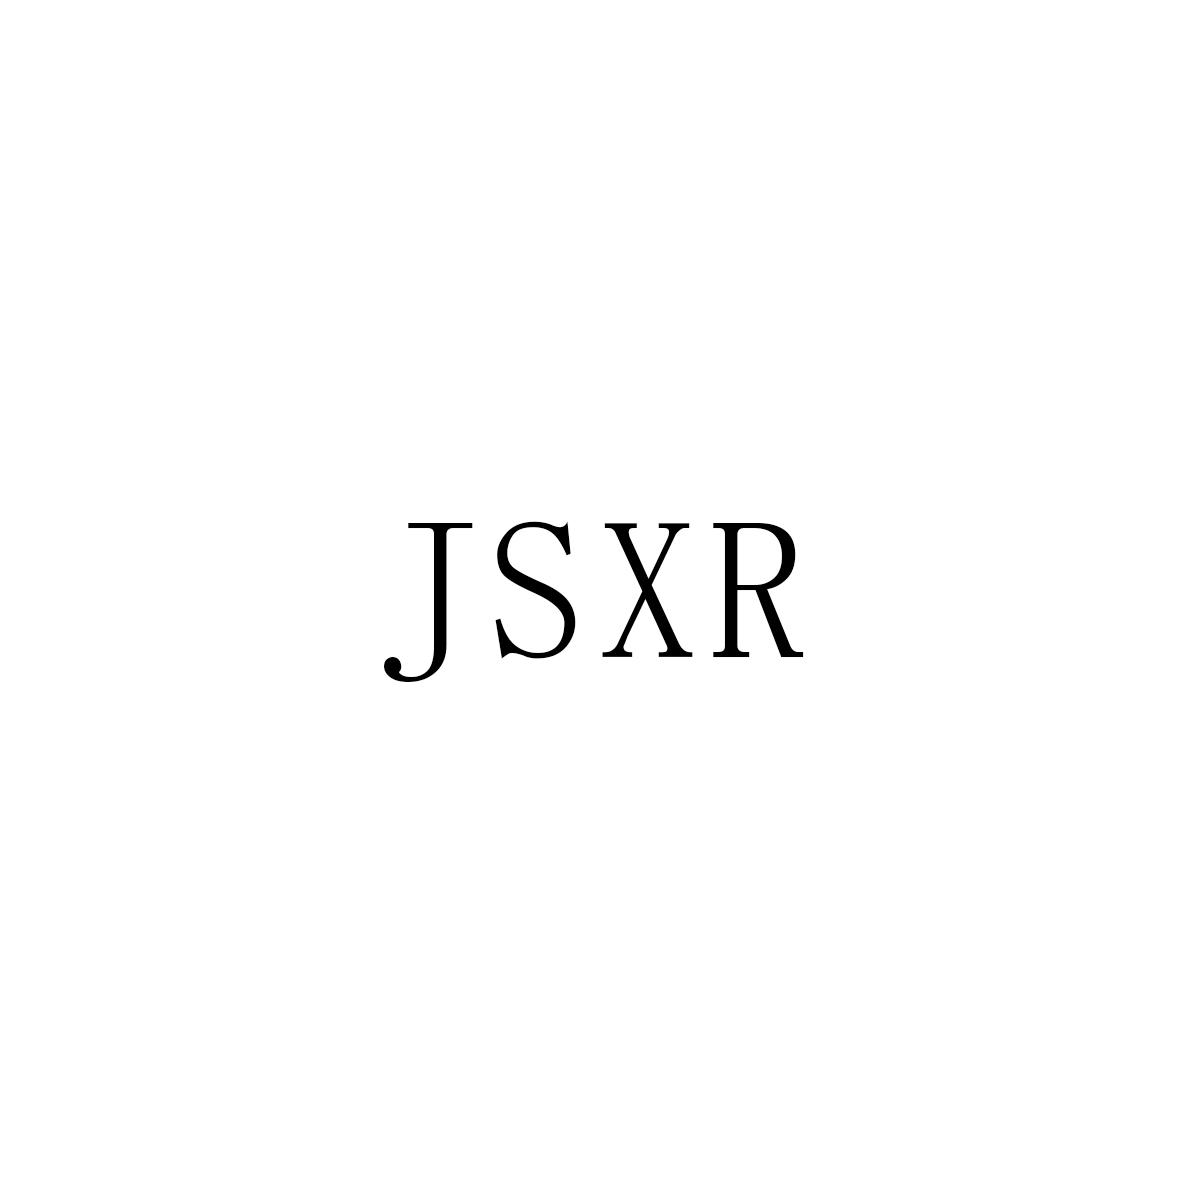 JSXR